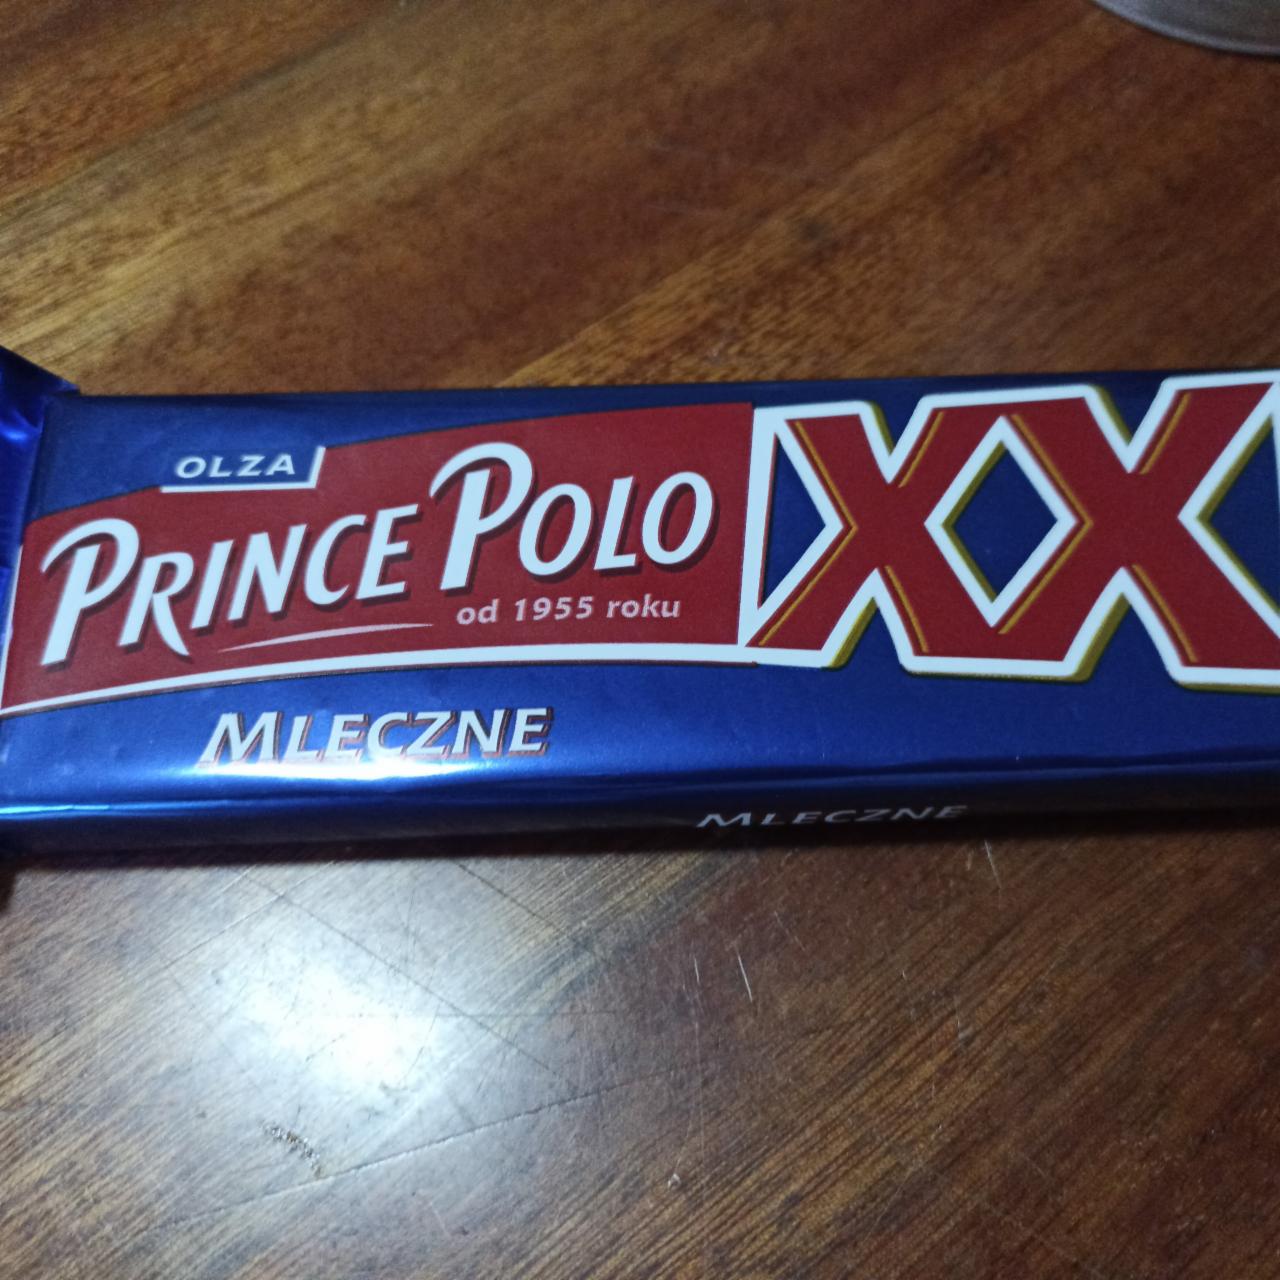 Фото - Вафля молочная Mleczne Prince Polo XXL Olza